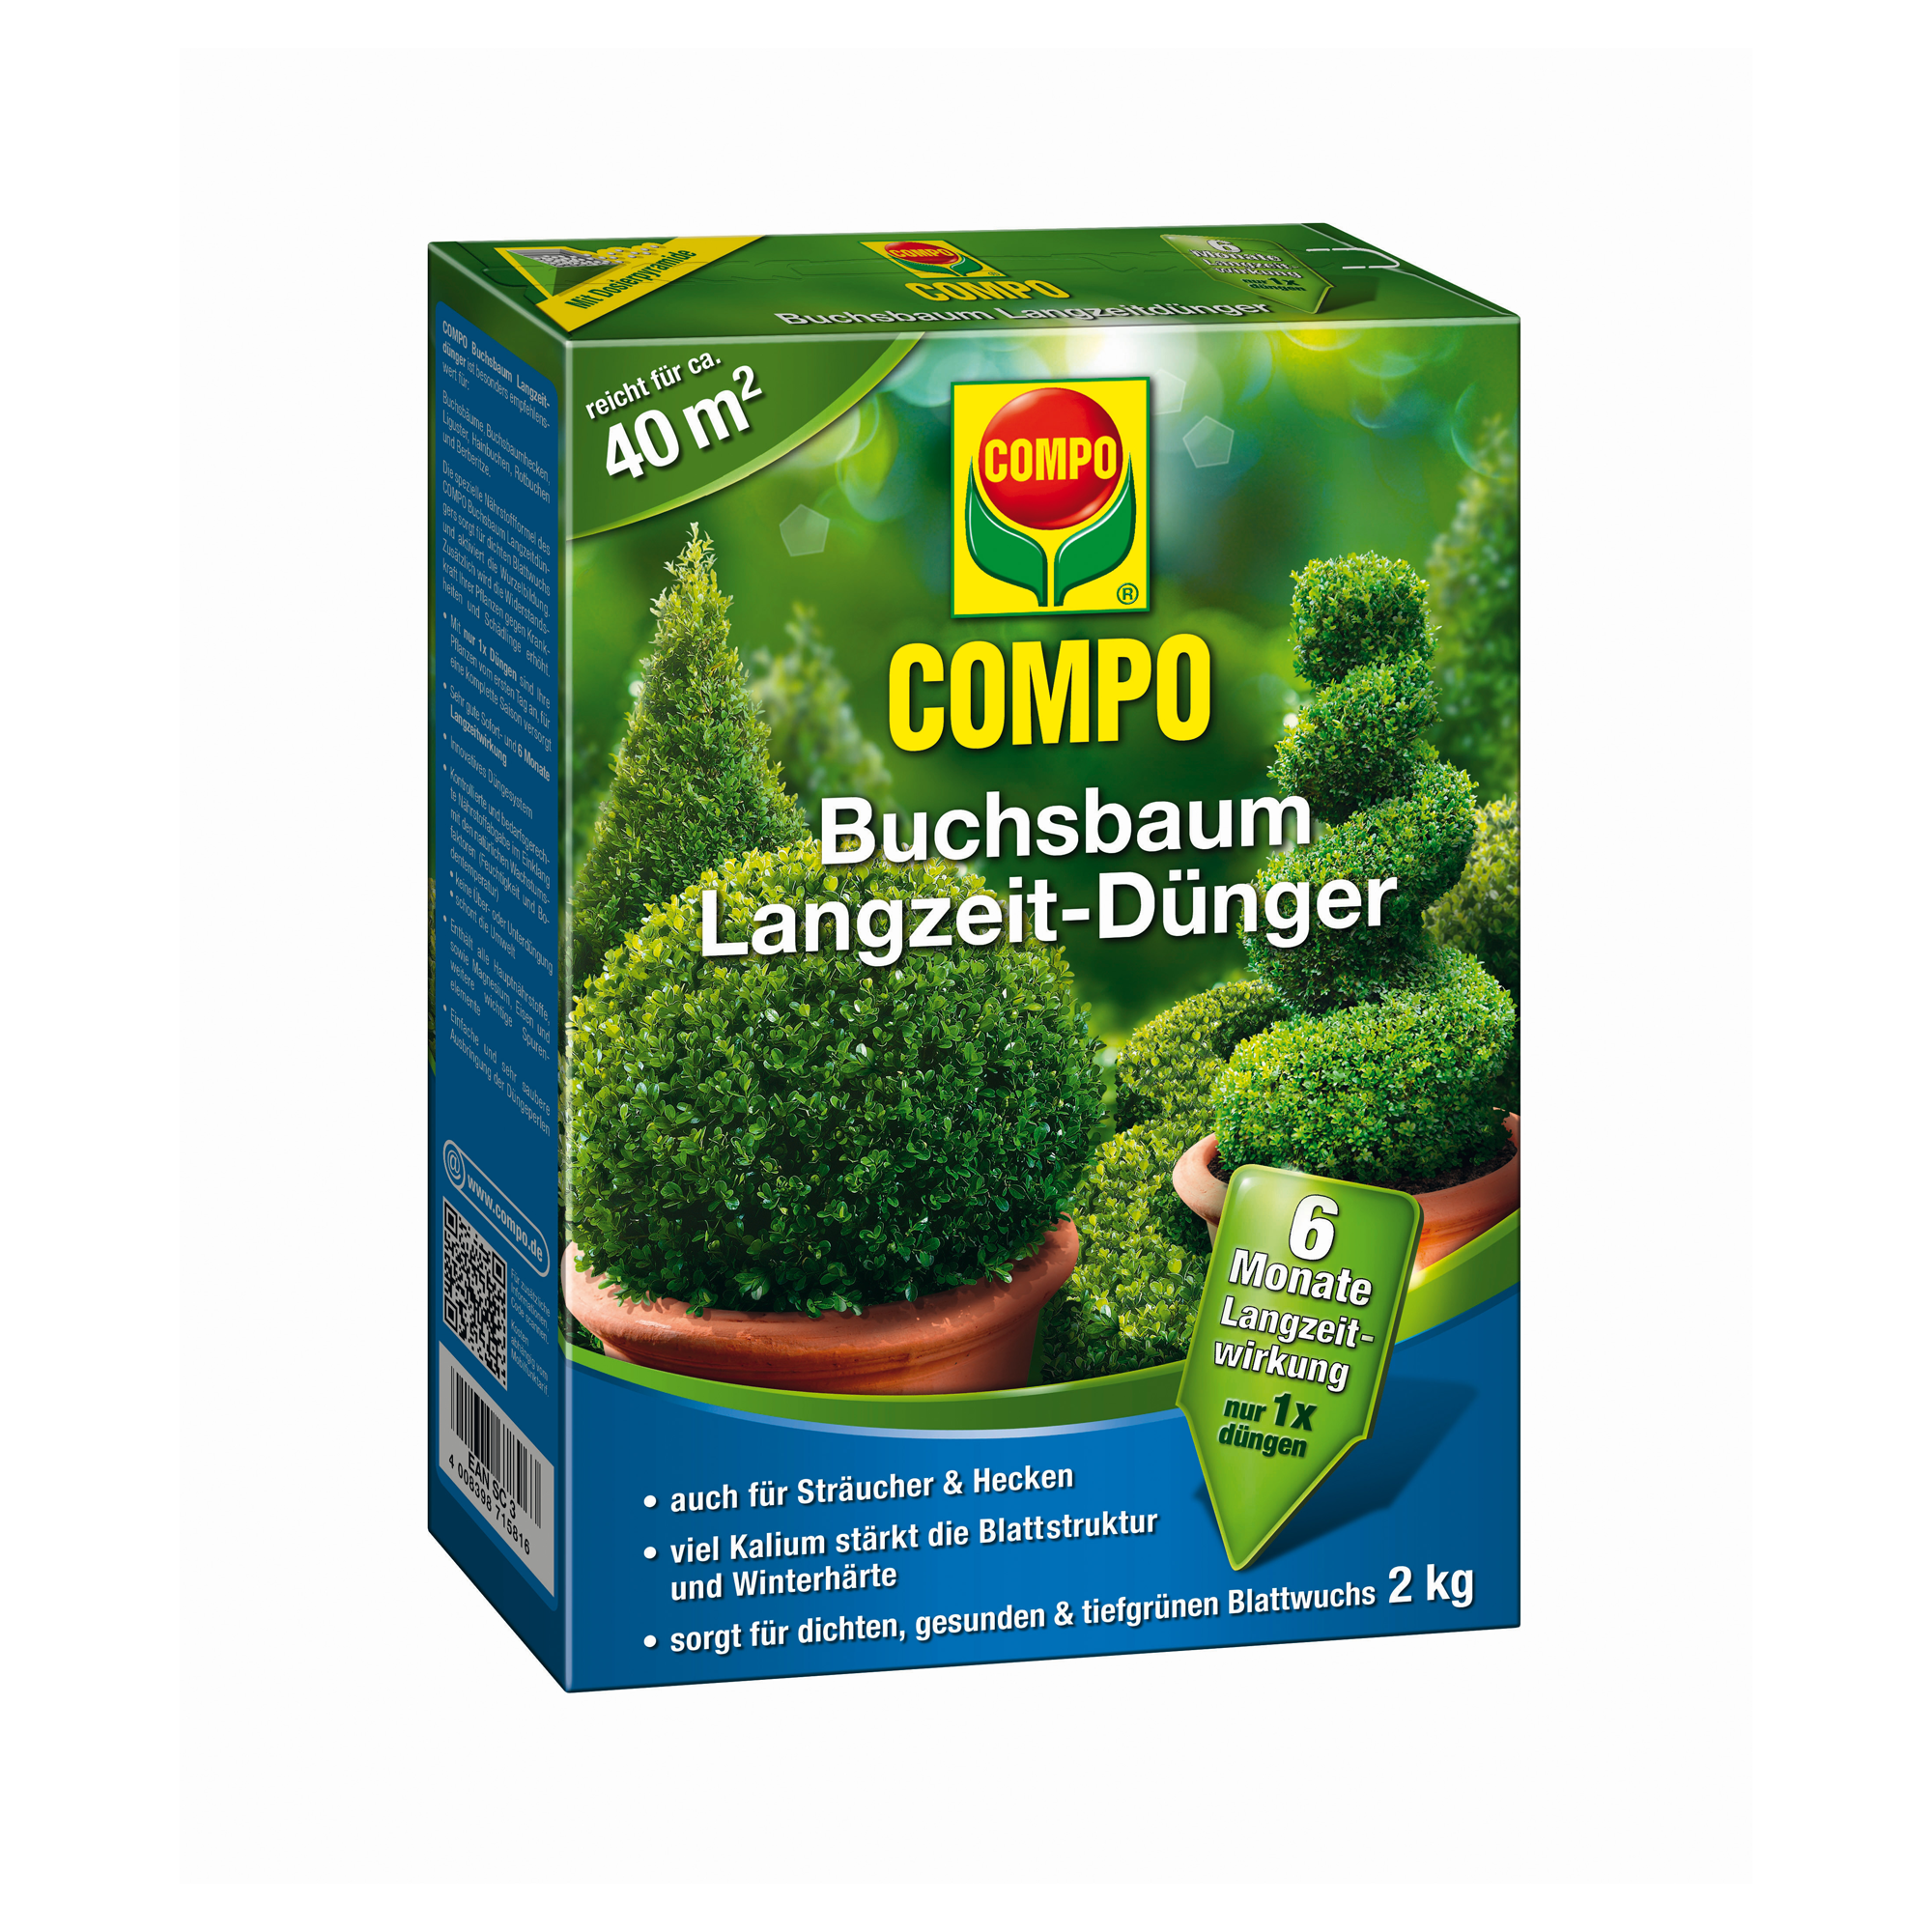 Buchsbaum-Langzeitdünger 2 kg + product picture